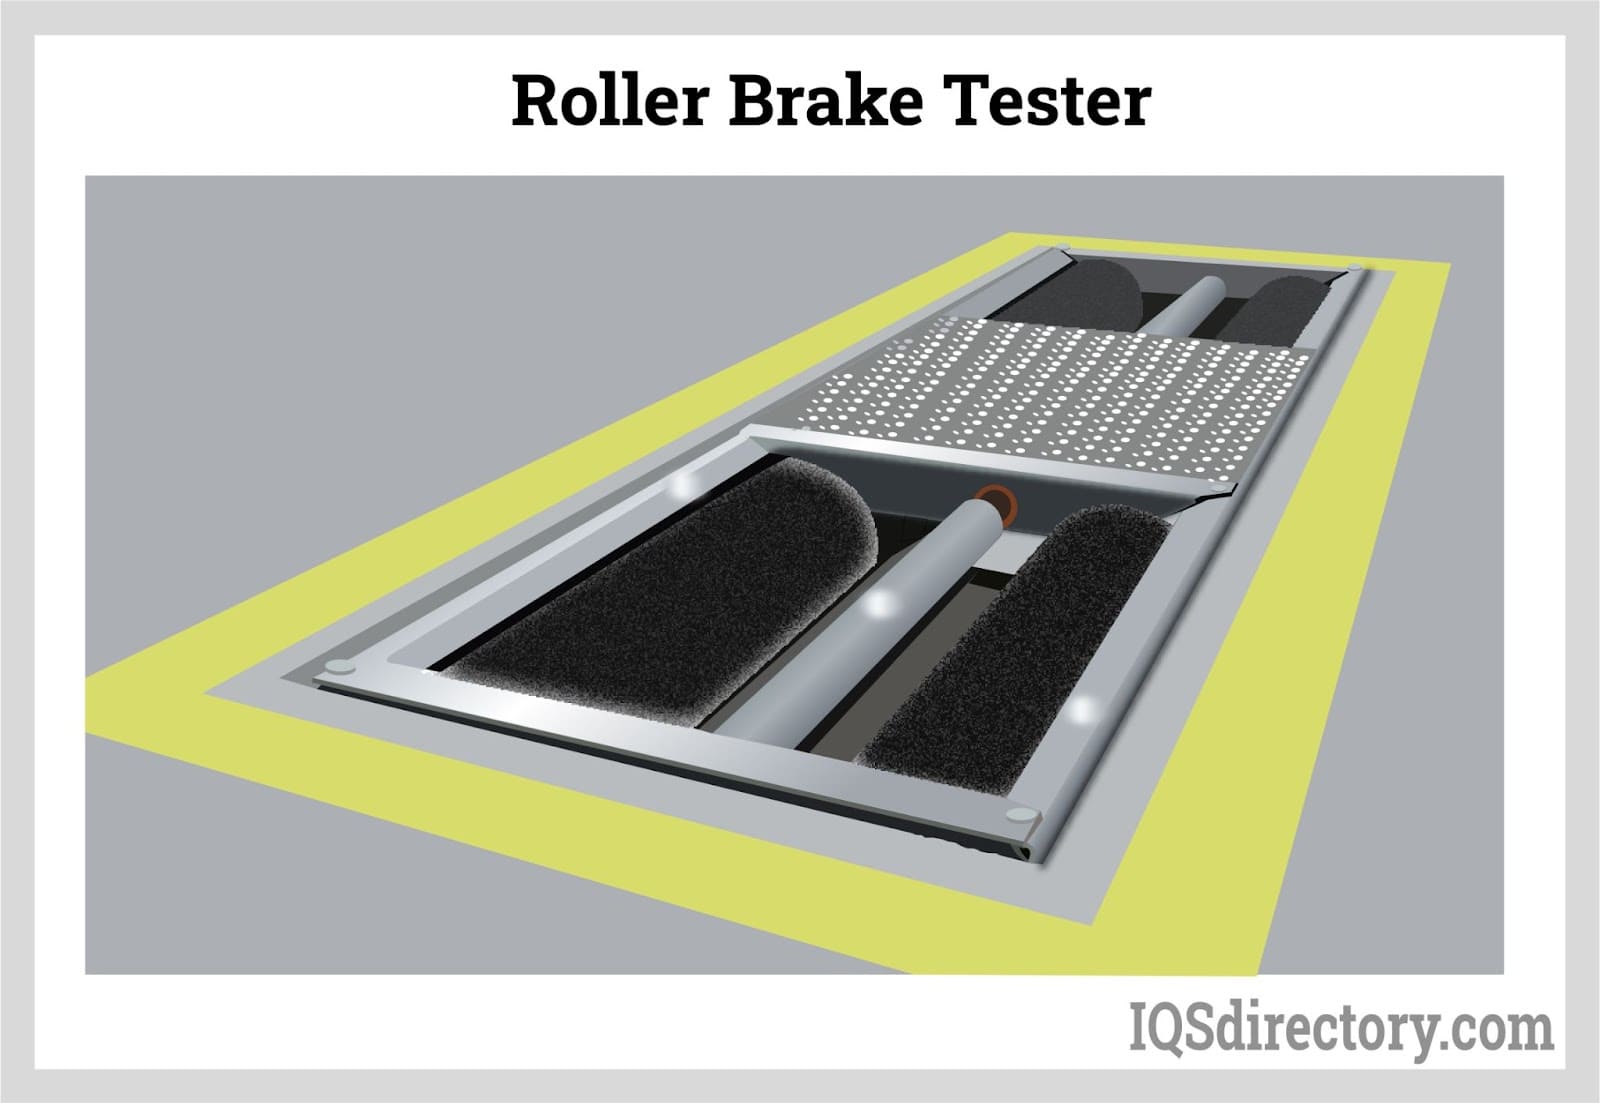 Roller Brake Tester